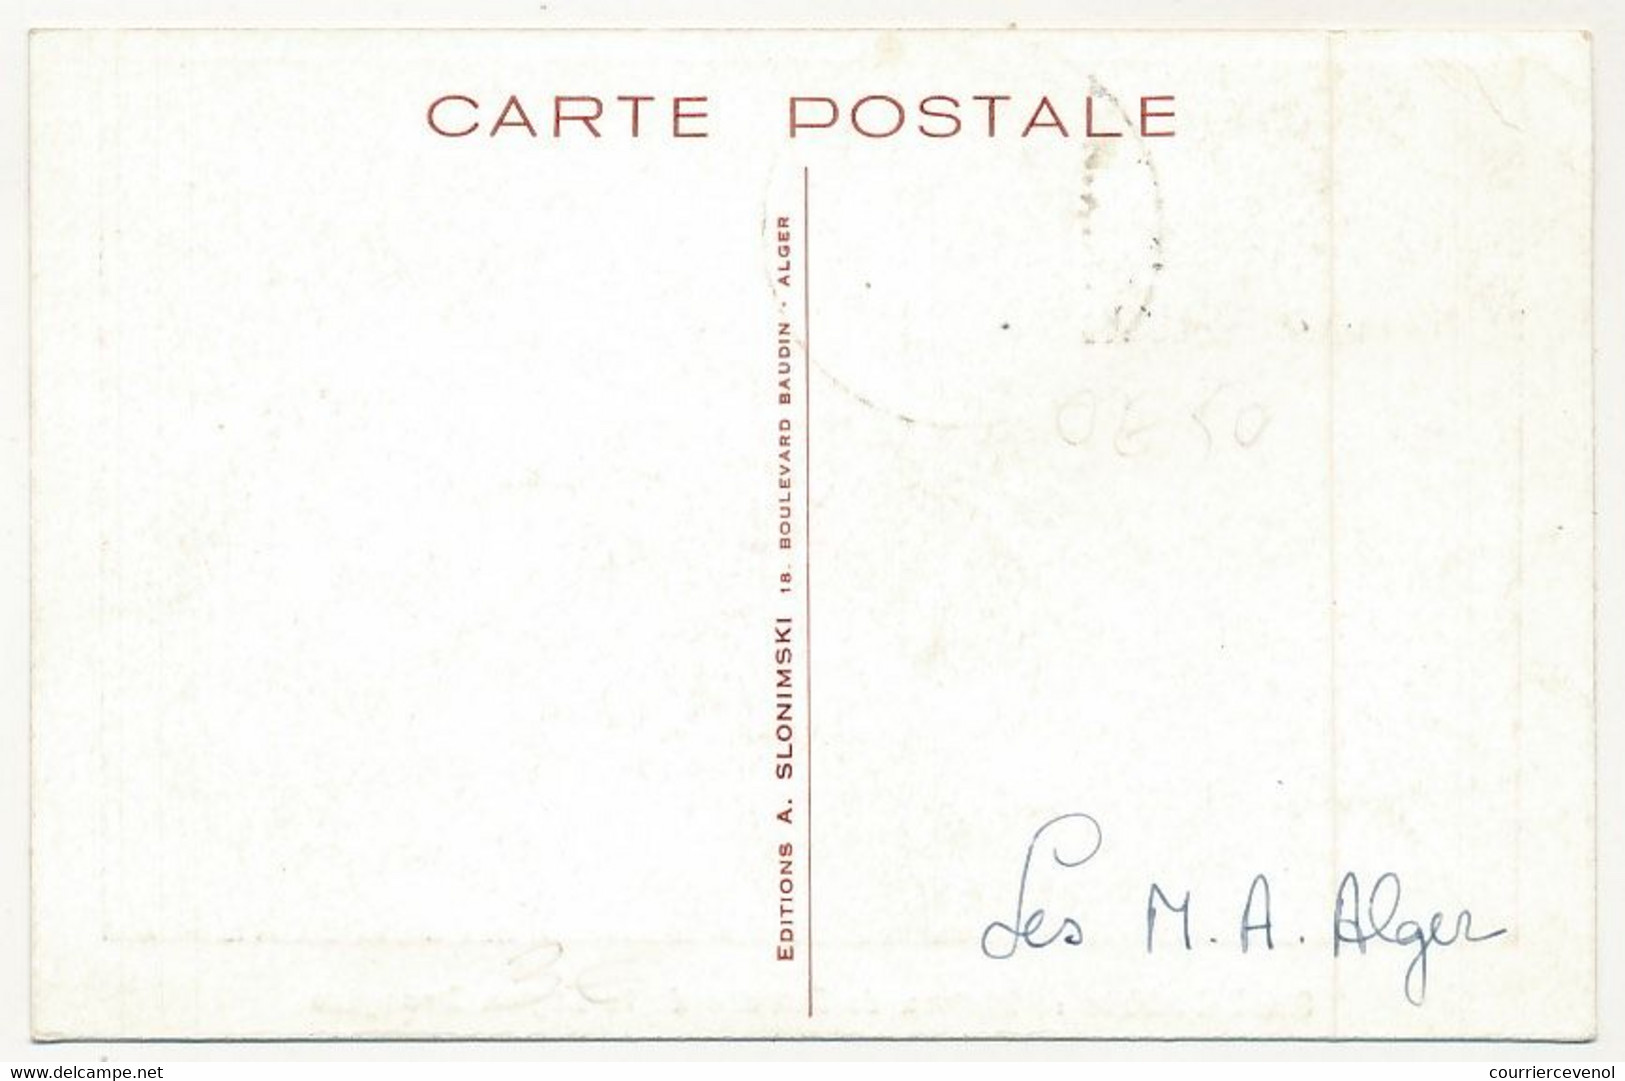 ALGERIE - Carte Maximum - 15F + 5F Maison De Retraite Du Légionnaire - Camerone - SIDI-BEL-ABBES 30 Avril 1956 - Maximumkarten